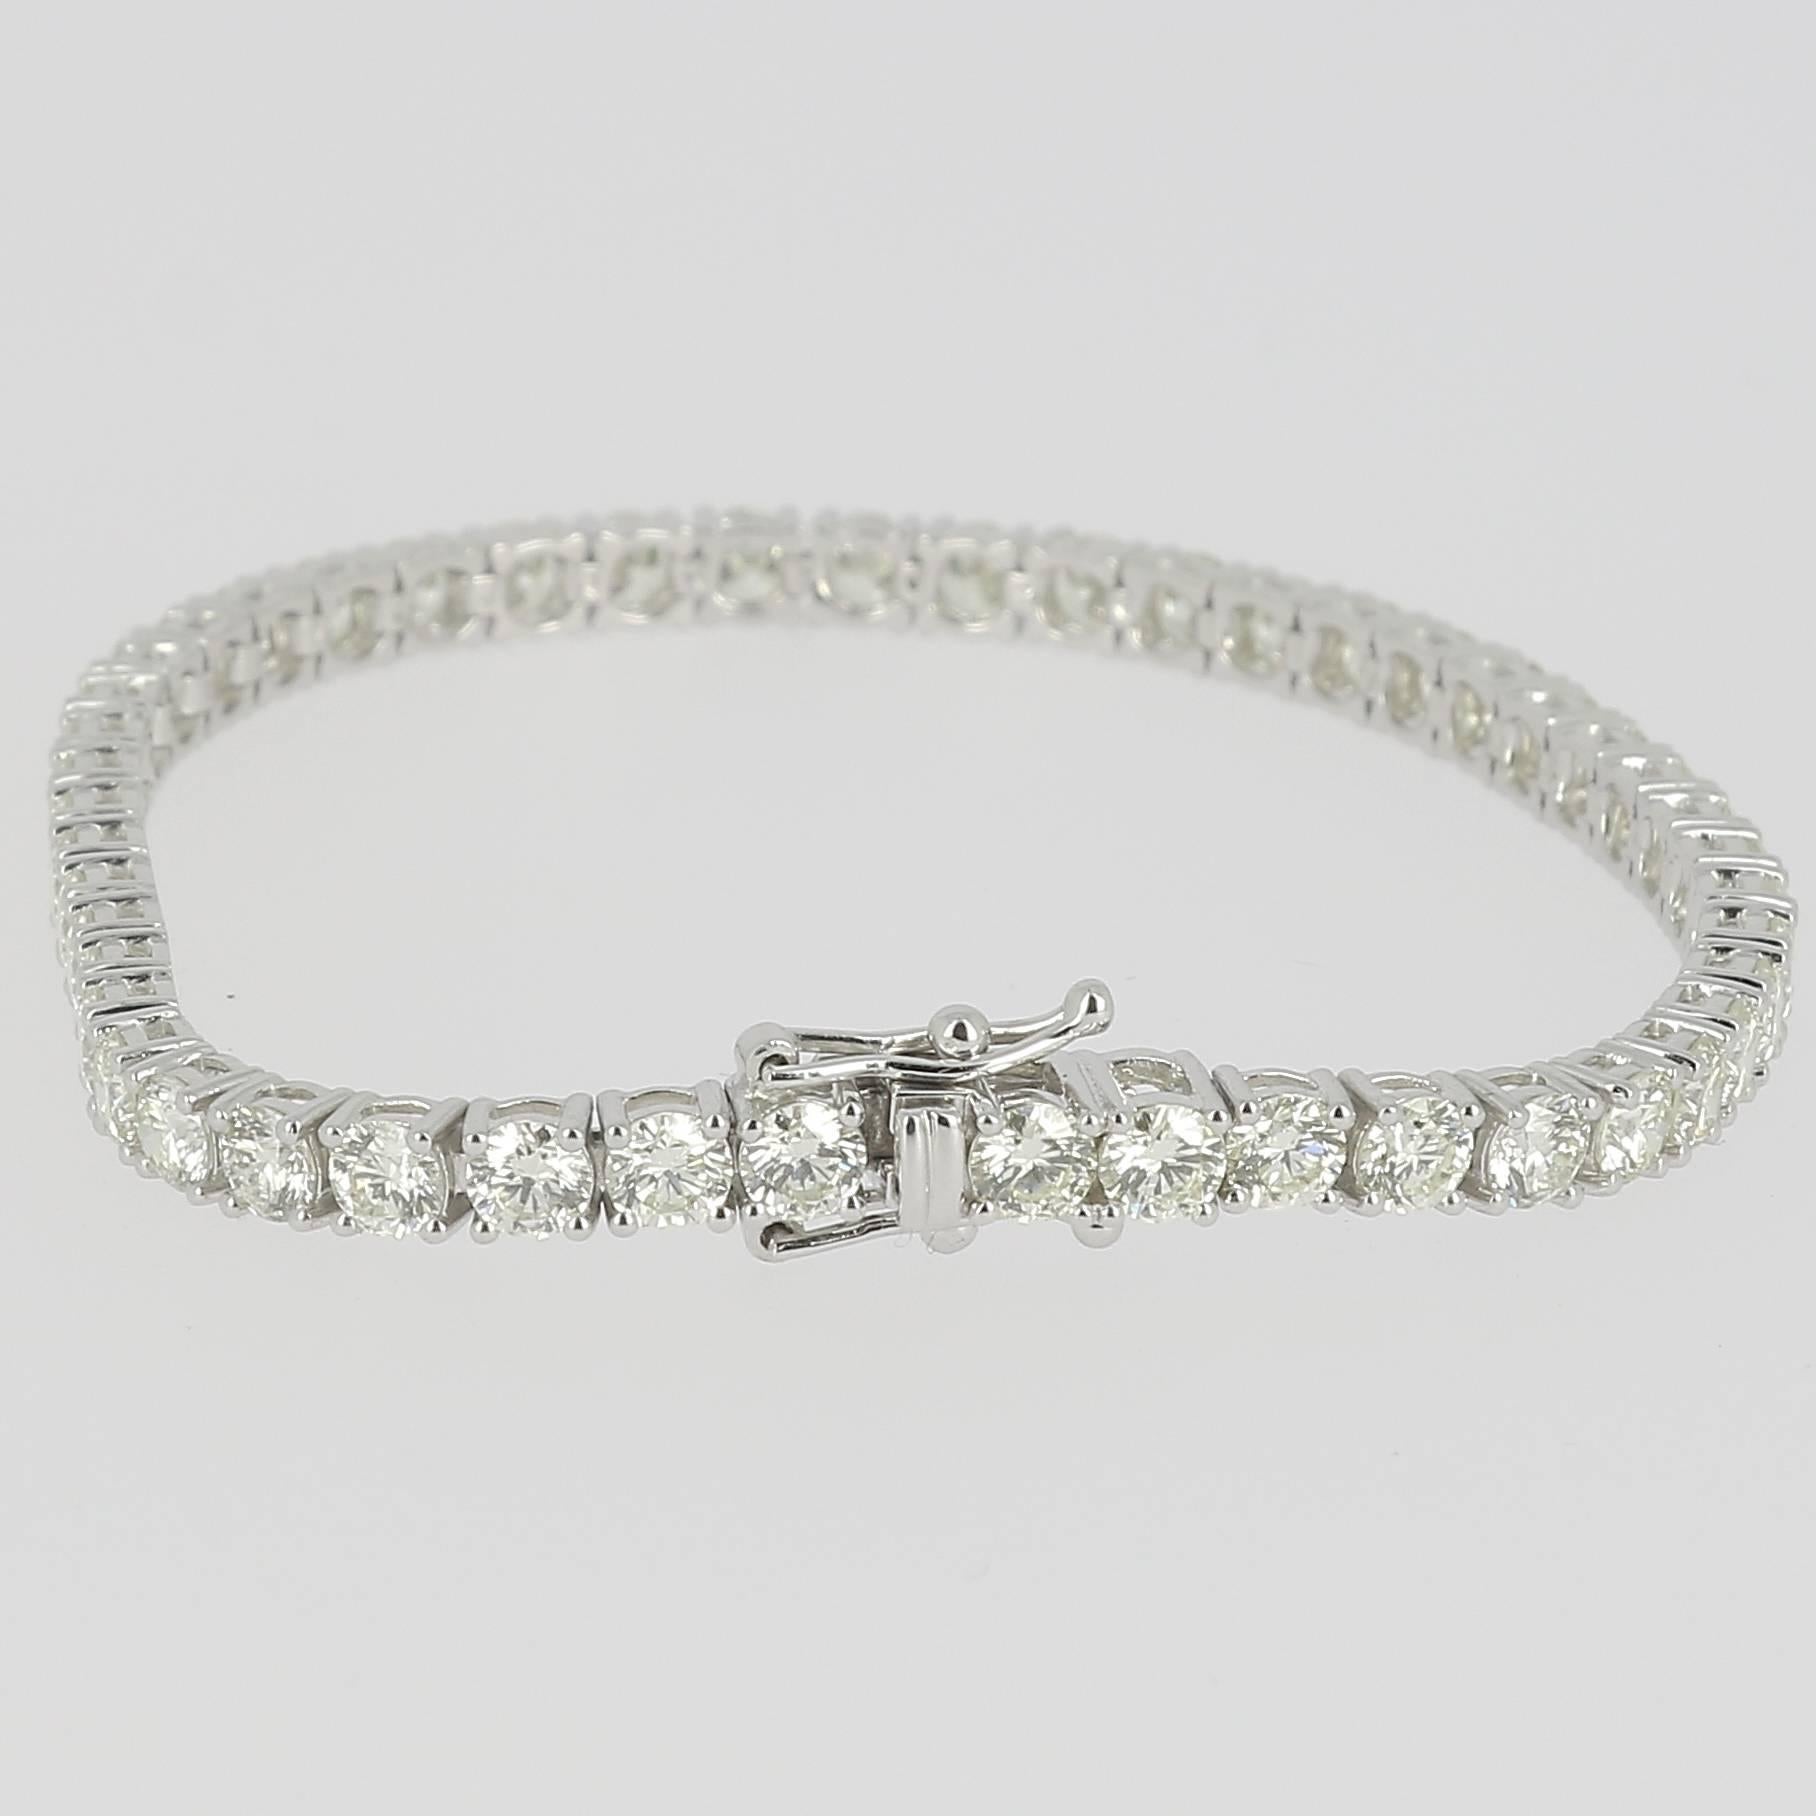 Contemporary 8.18 Carat White Diamond Tennis Bracelets 18K WhiteGold /Line Bracelets /Riviera